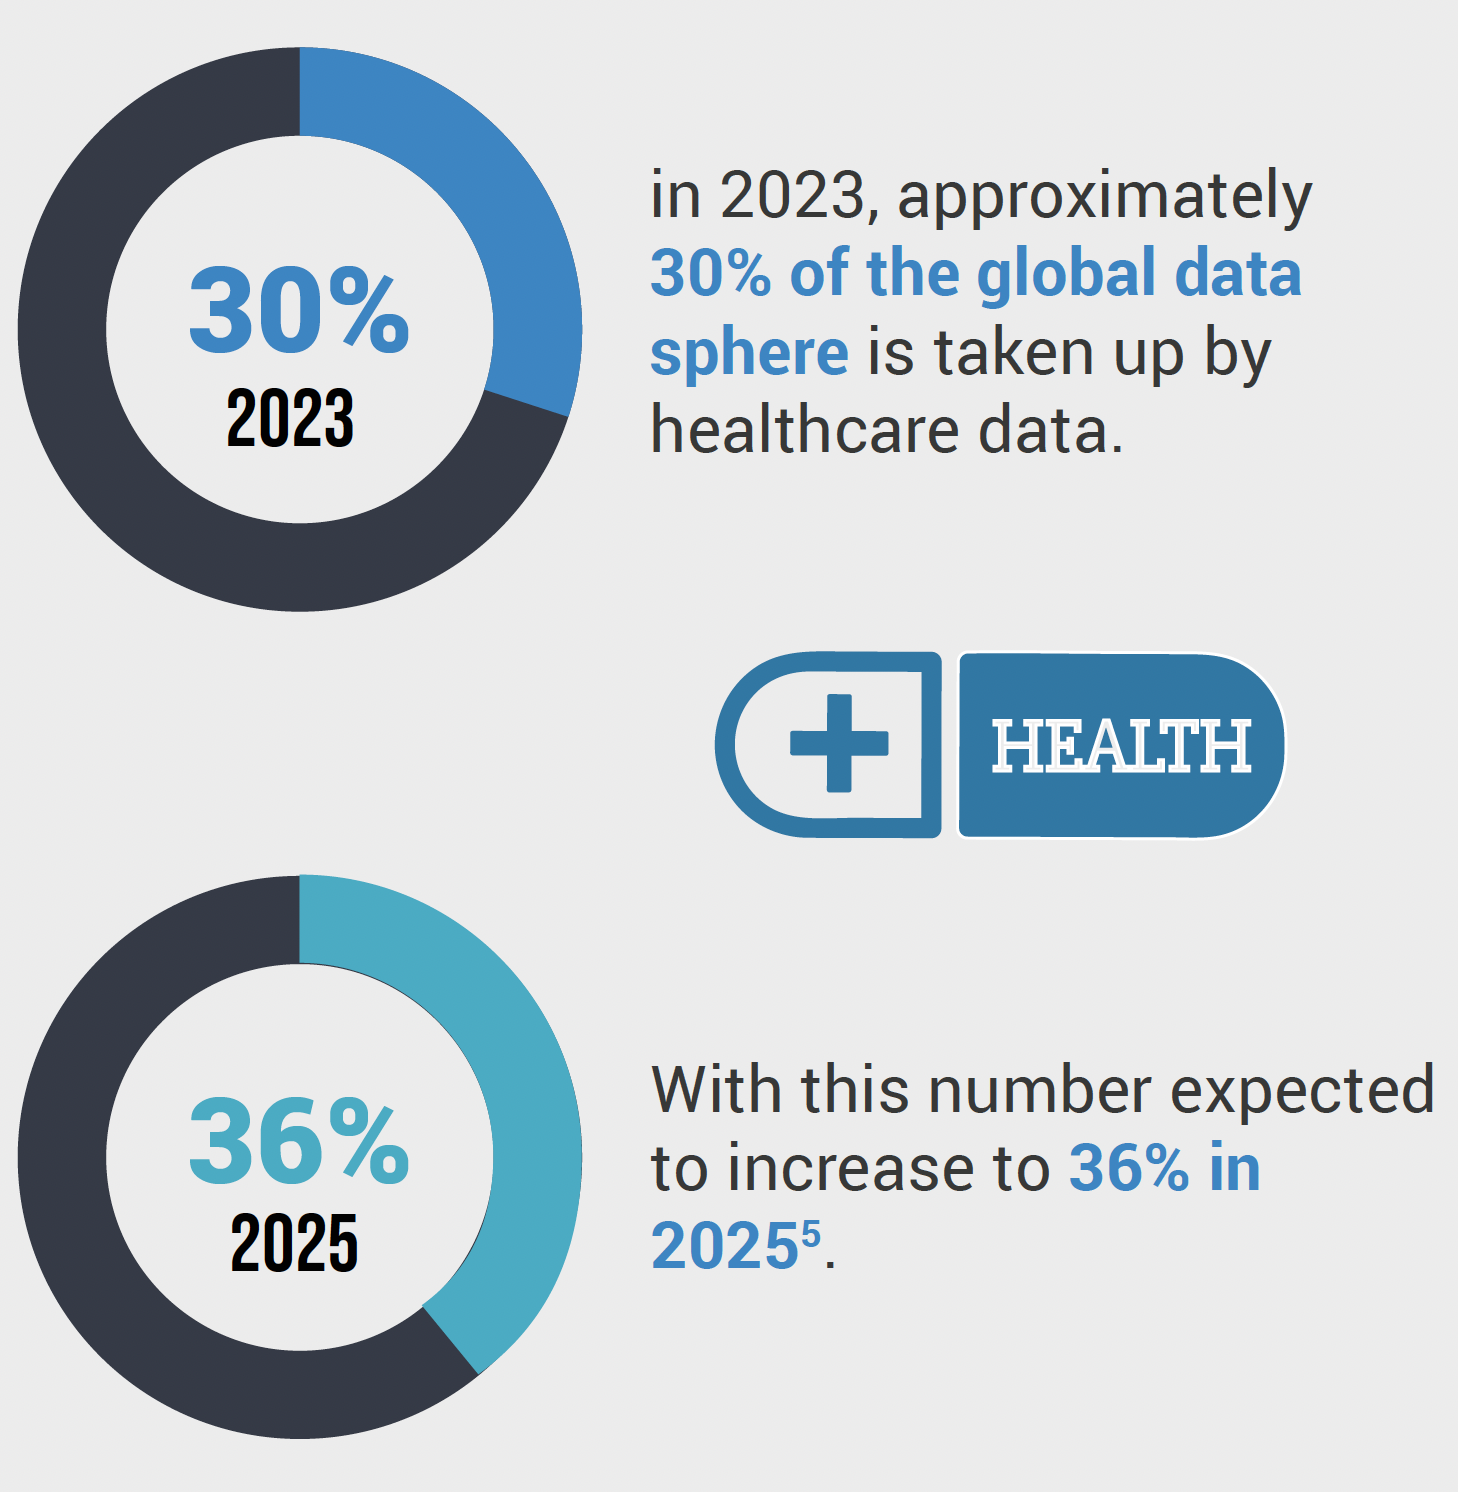 Global Data Sphere for Healthcare Data